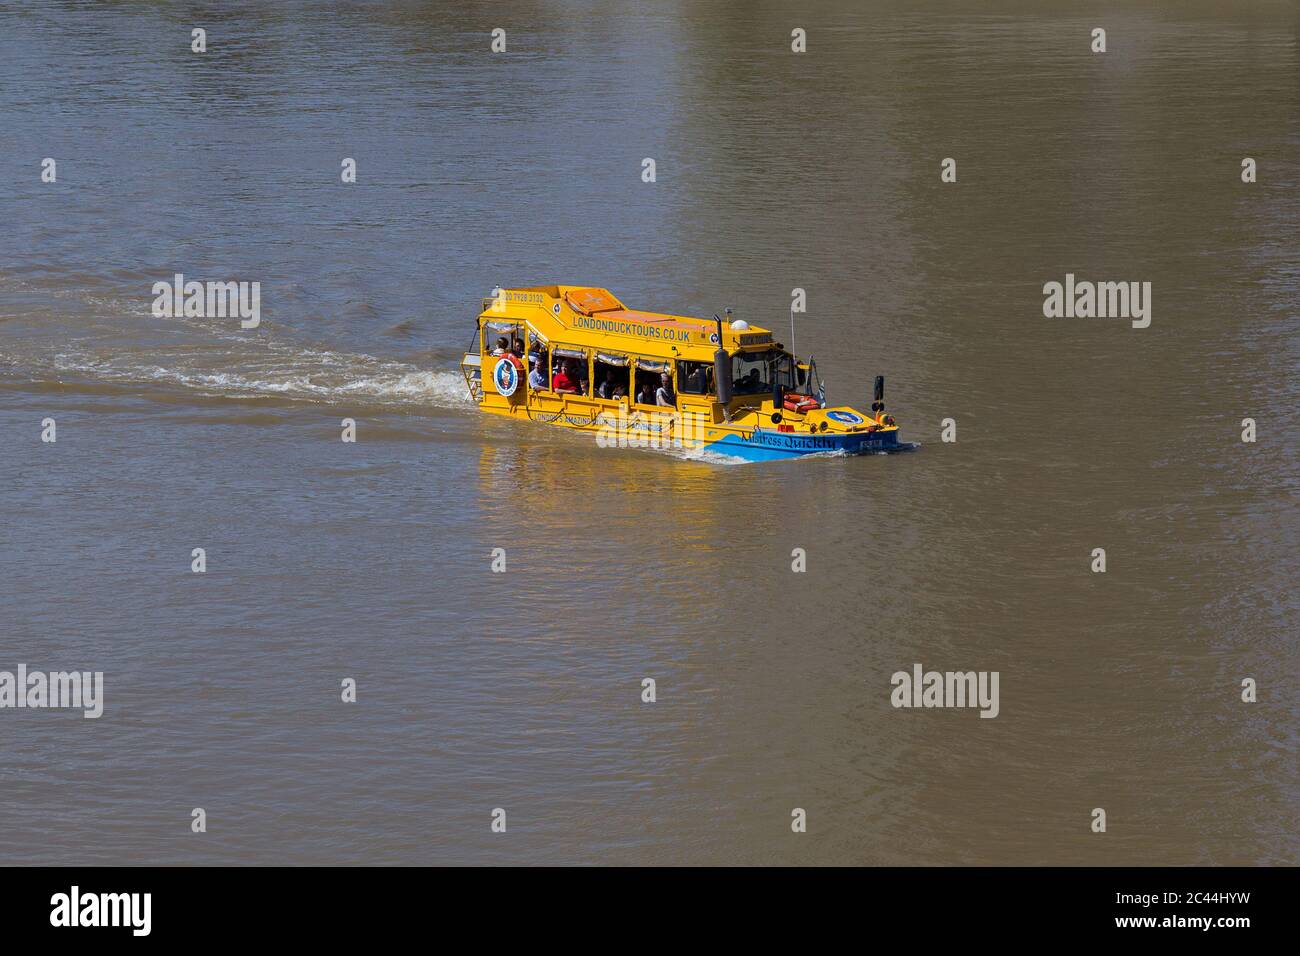 LONDRES, Royaume-Uni - 18 JUILLET 2015 : un bateau London Duck Tour dans la Tamise pendant la journée. On peut voir les gens sur le bateau. Banque D'Images